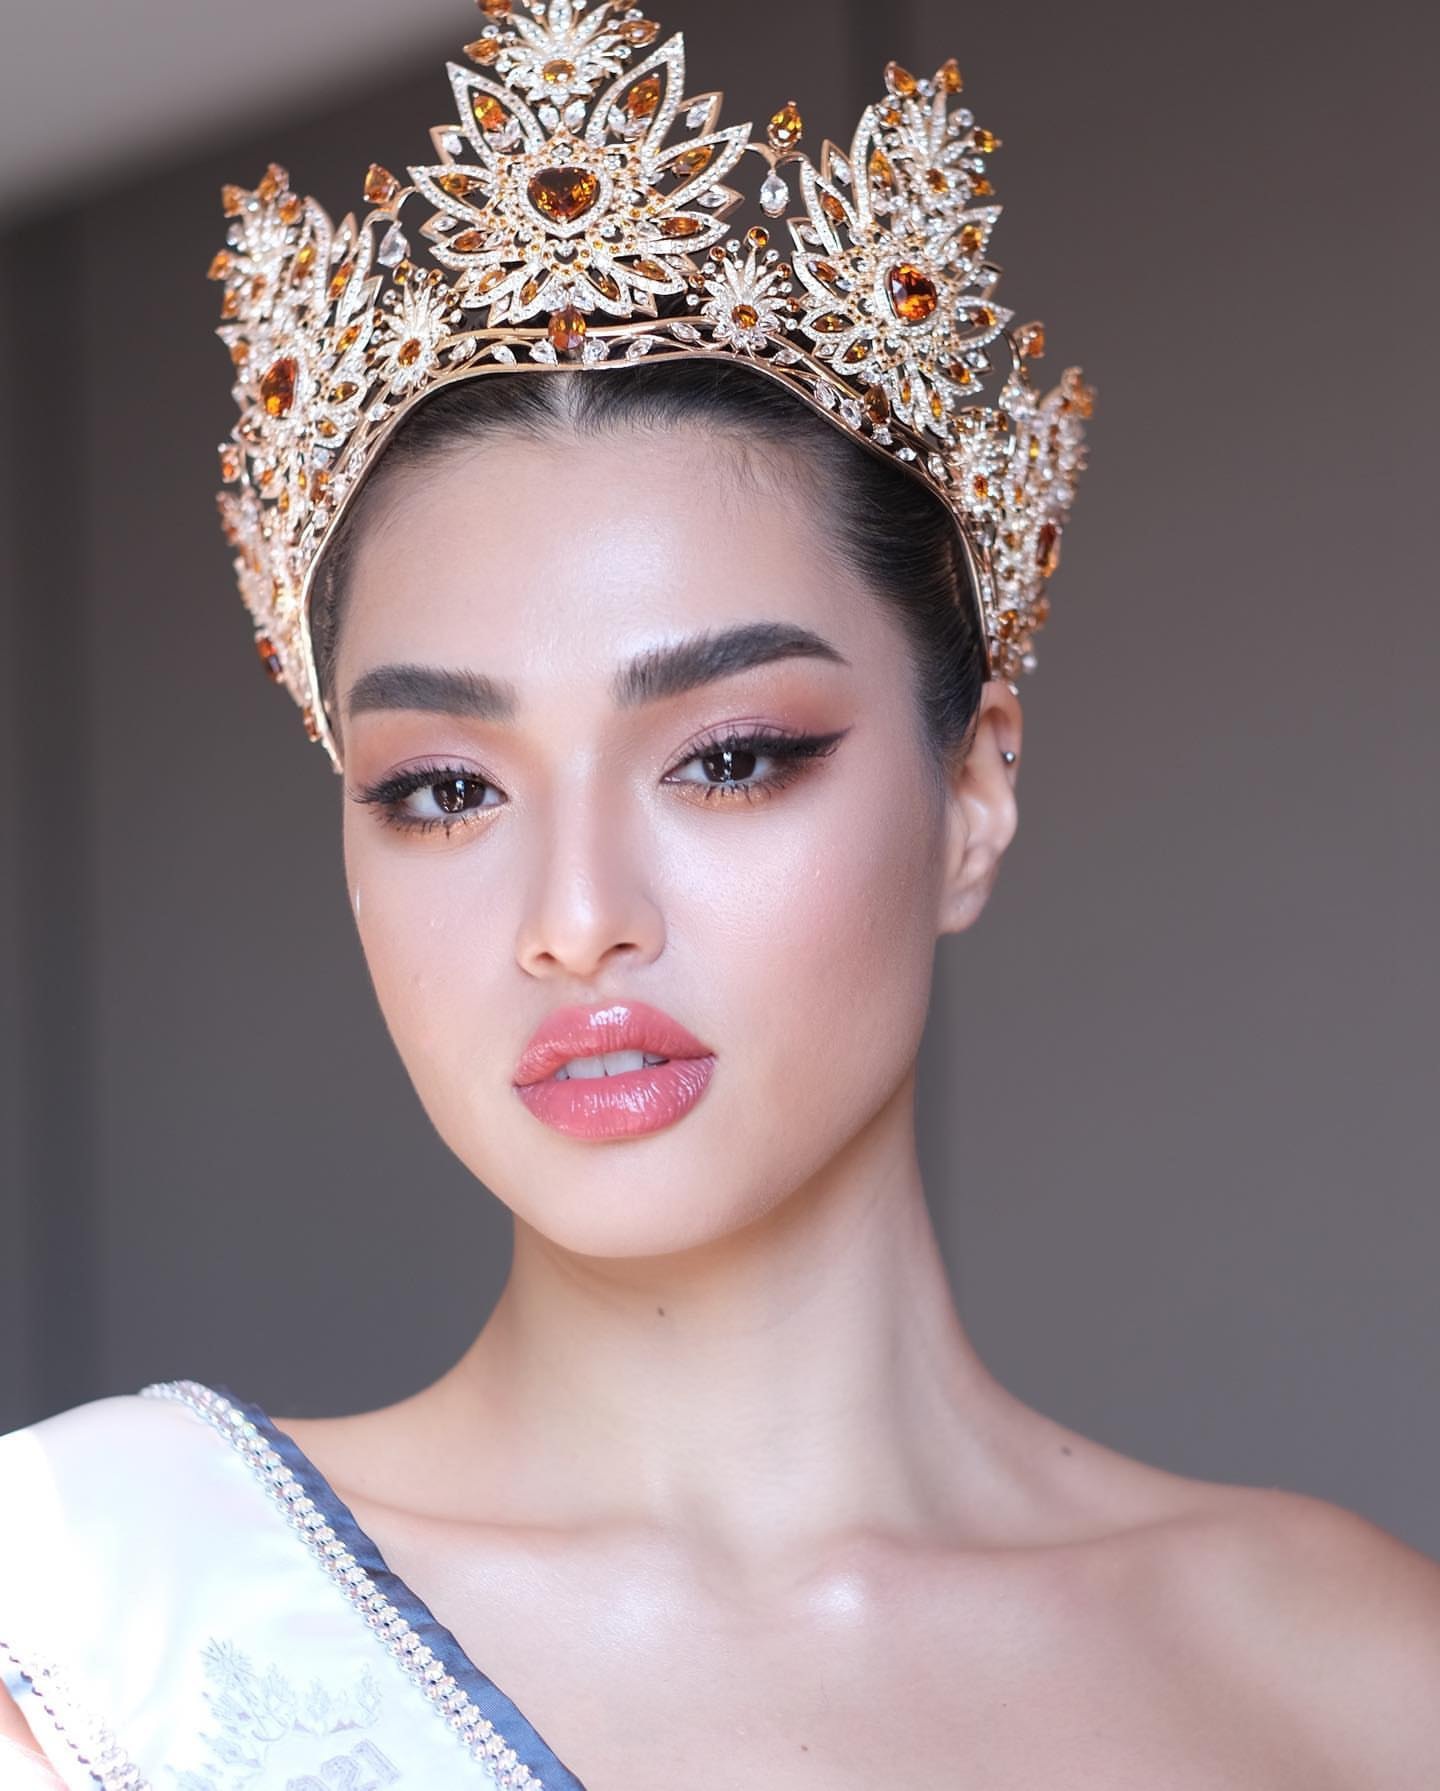 Tân Hoa hậu Thái Lan đáp trả khi bị miệt thị ngoại hình vì cân nặng 71 kg - Ảnh 2.